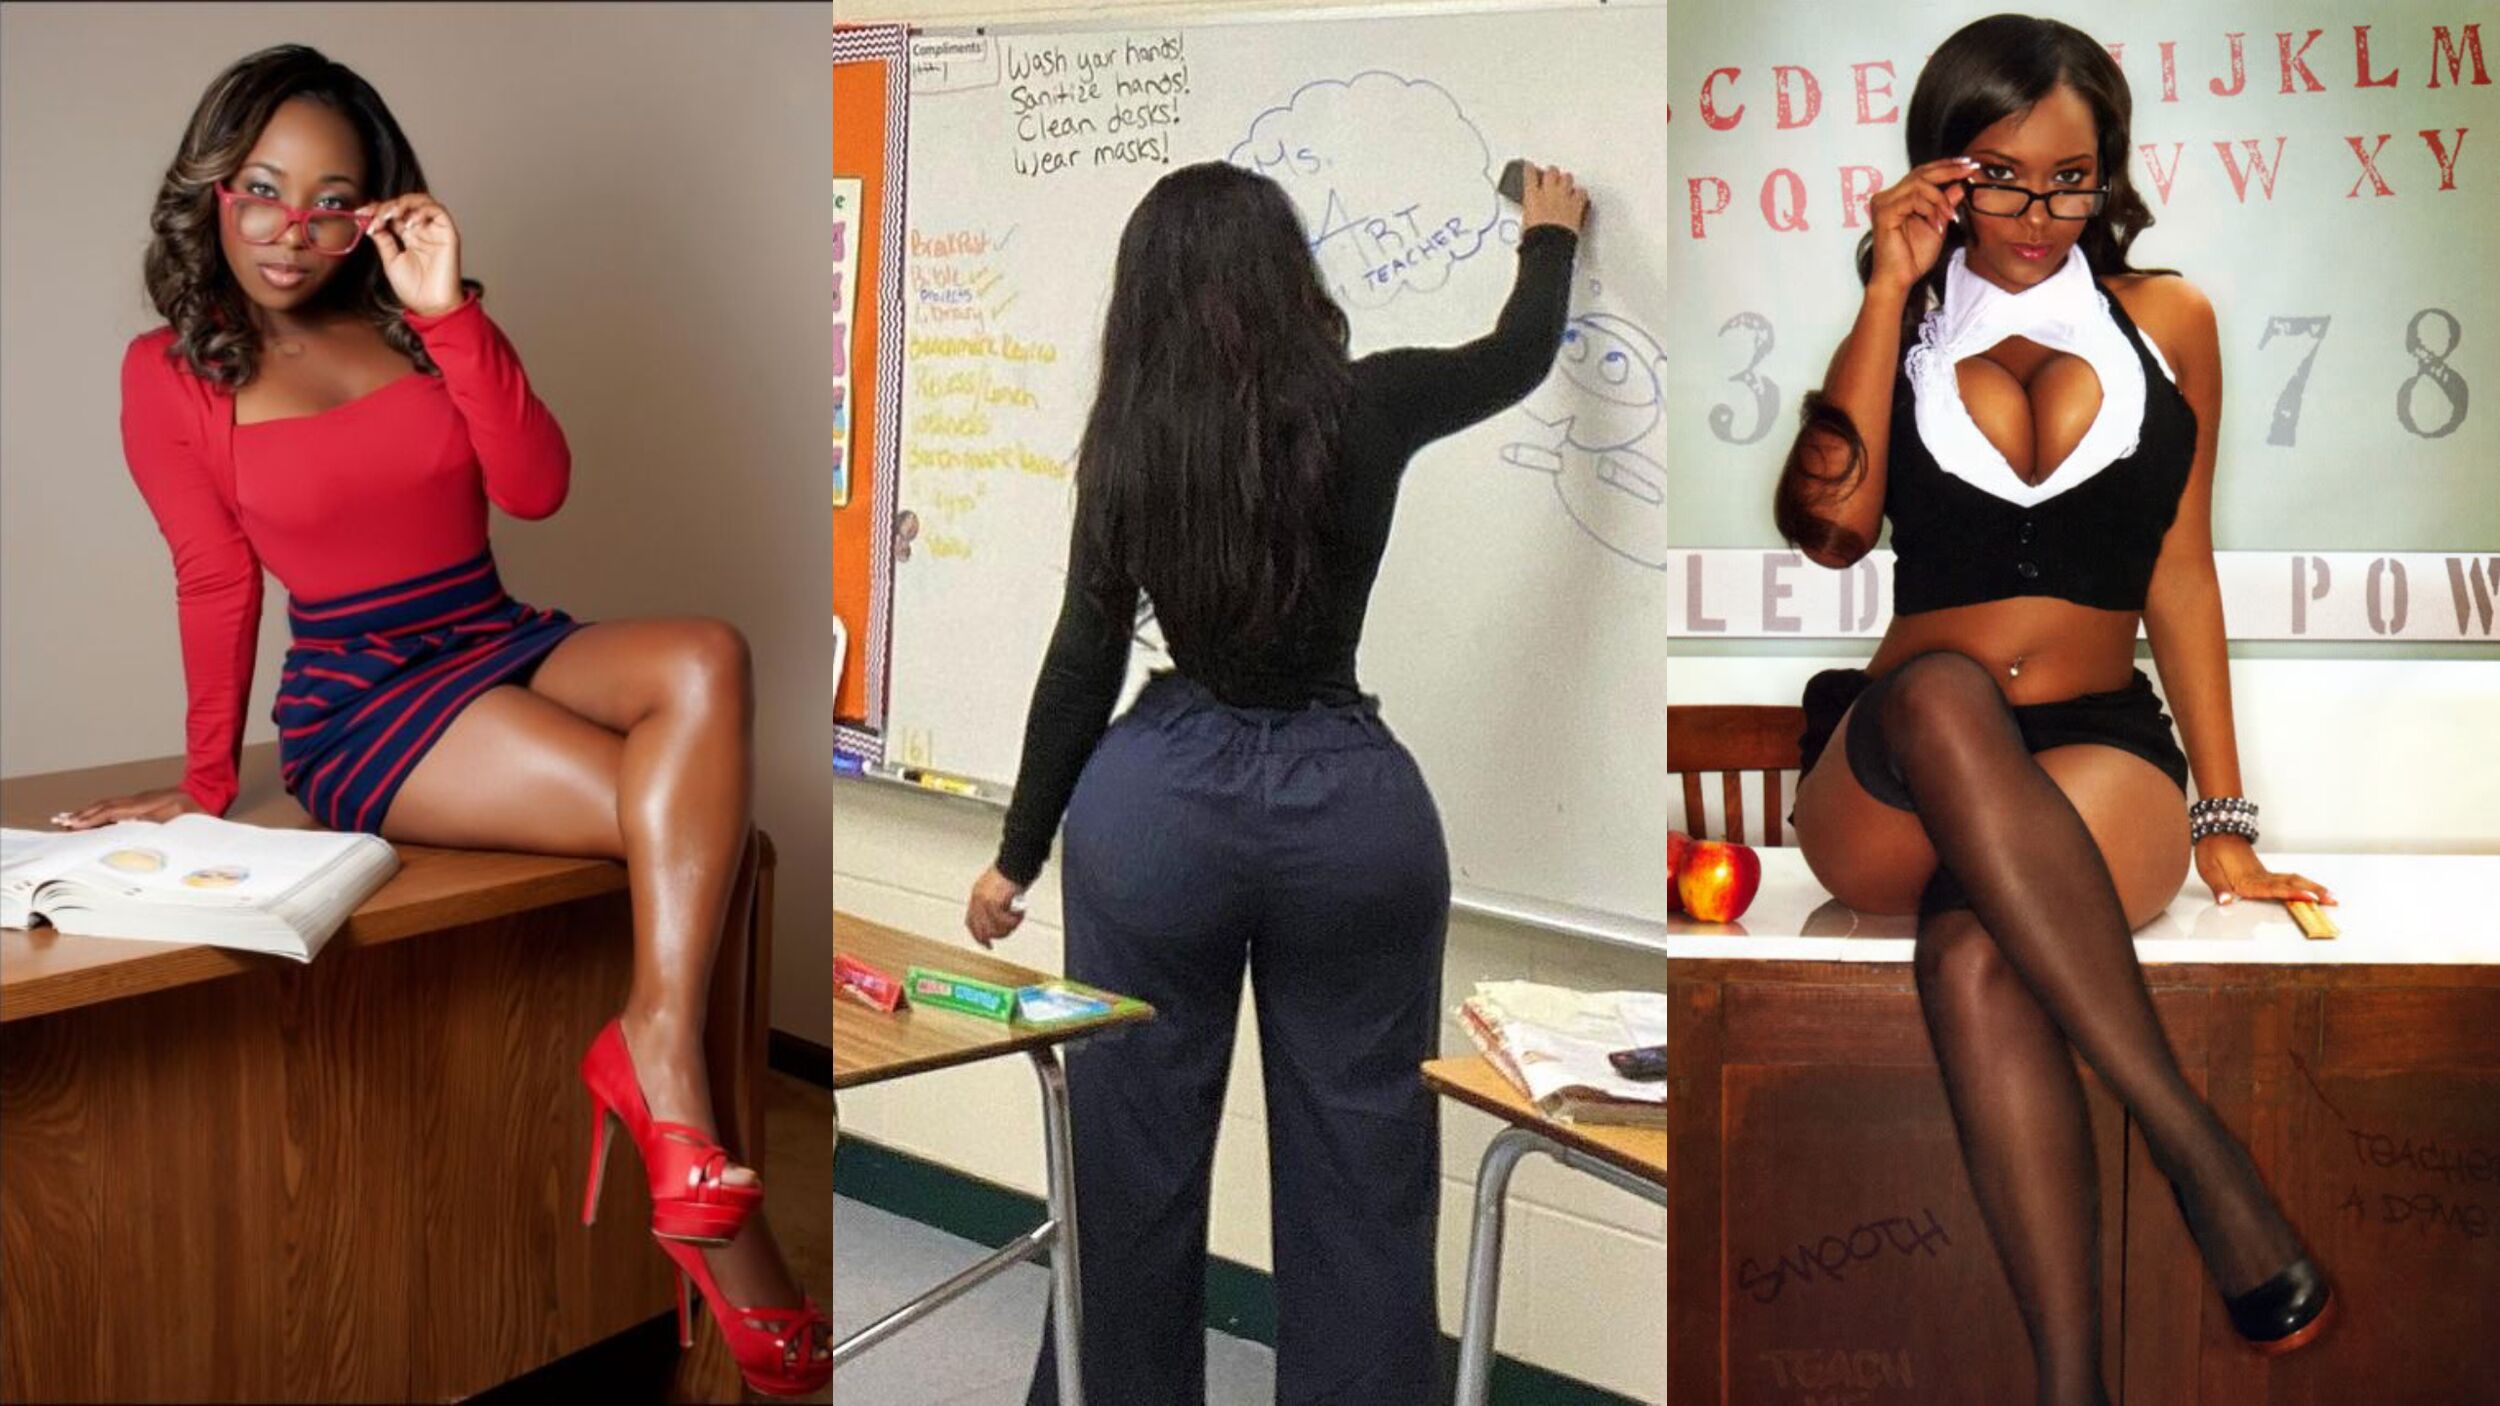 corey clothier recommends Sexy Teacher Pics